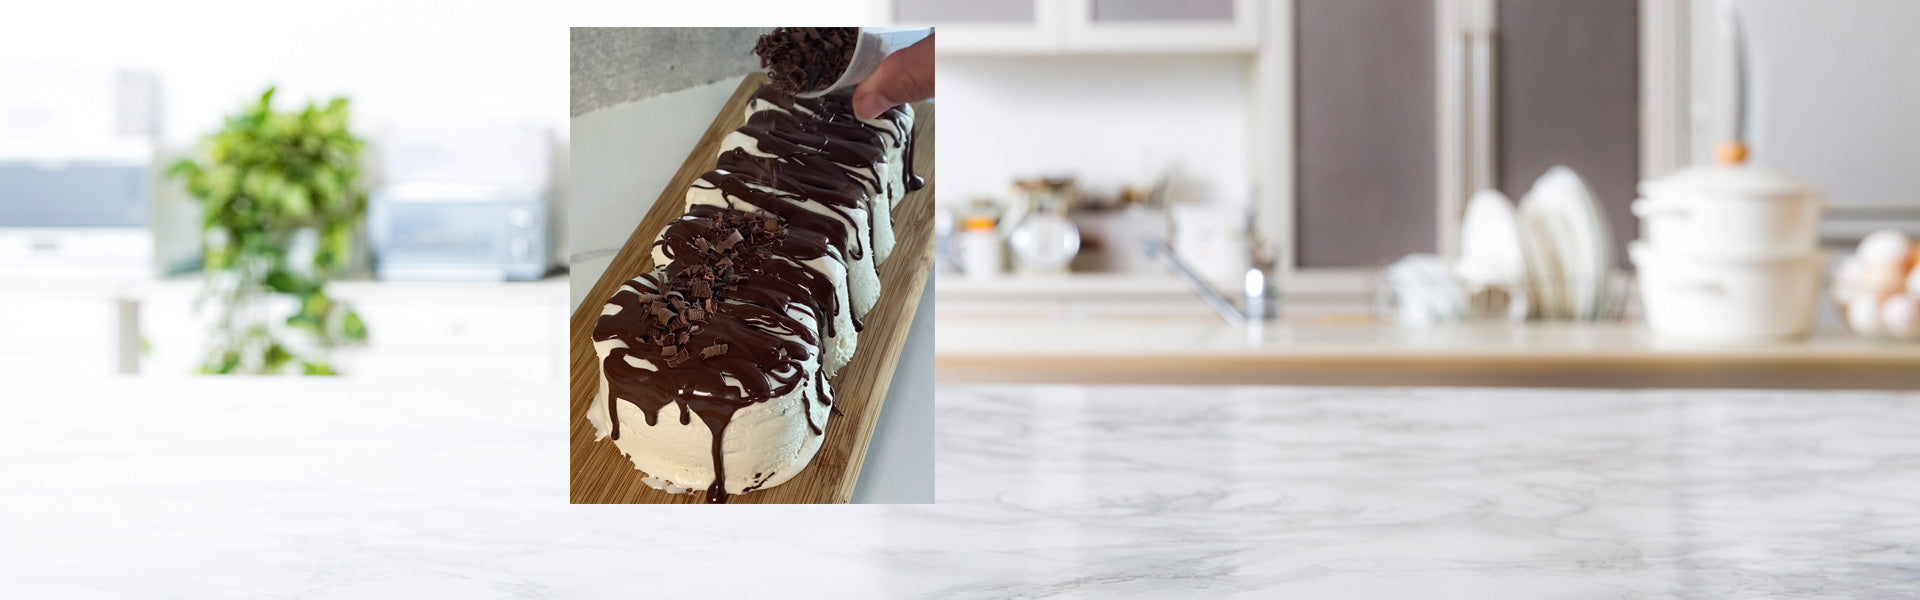 Gâteau à la crème glacée à la vanille avec des couches de chocolat croustillant